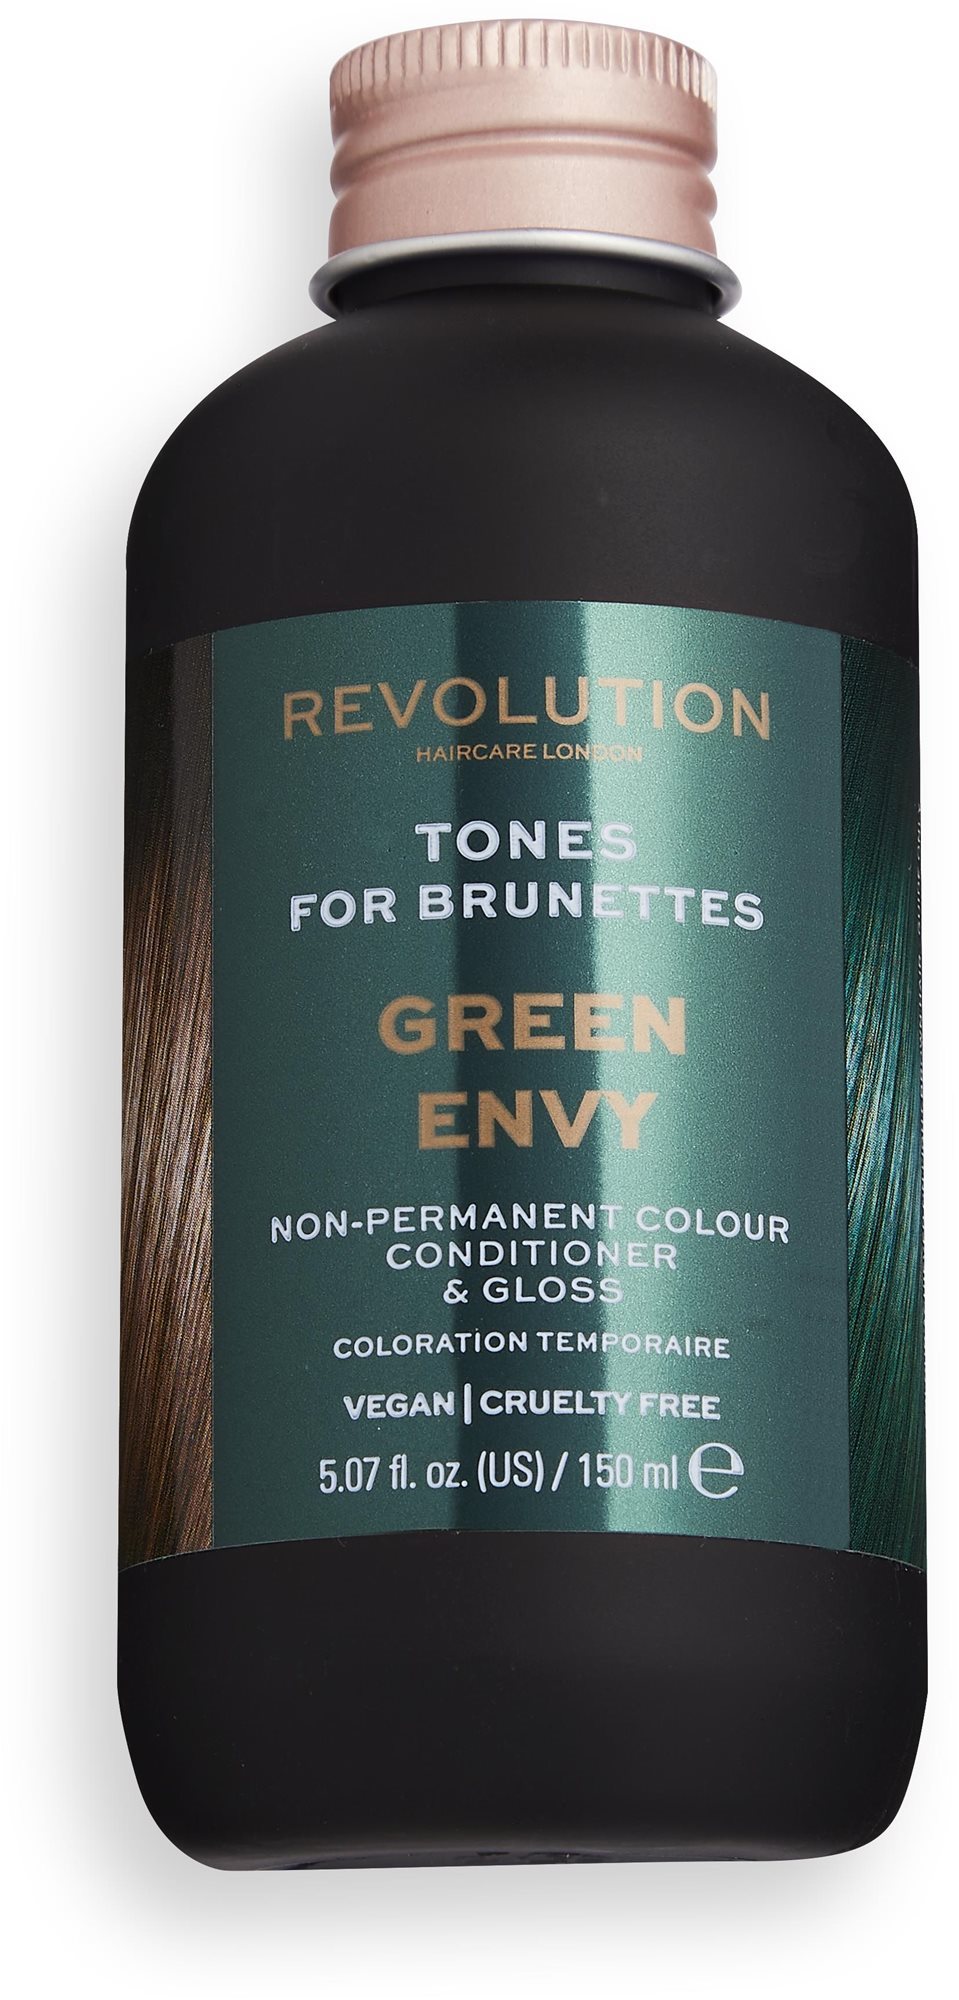 REVOLUTION HAIRCARE Tones for Brunettes Green Envy 150 ml